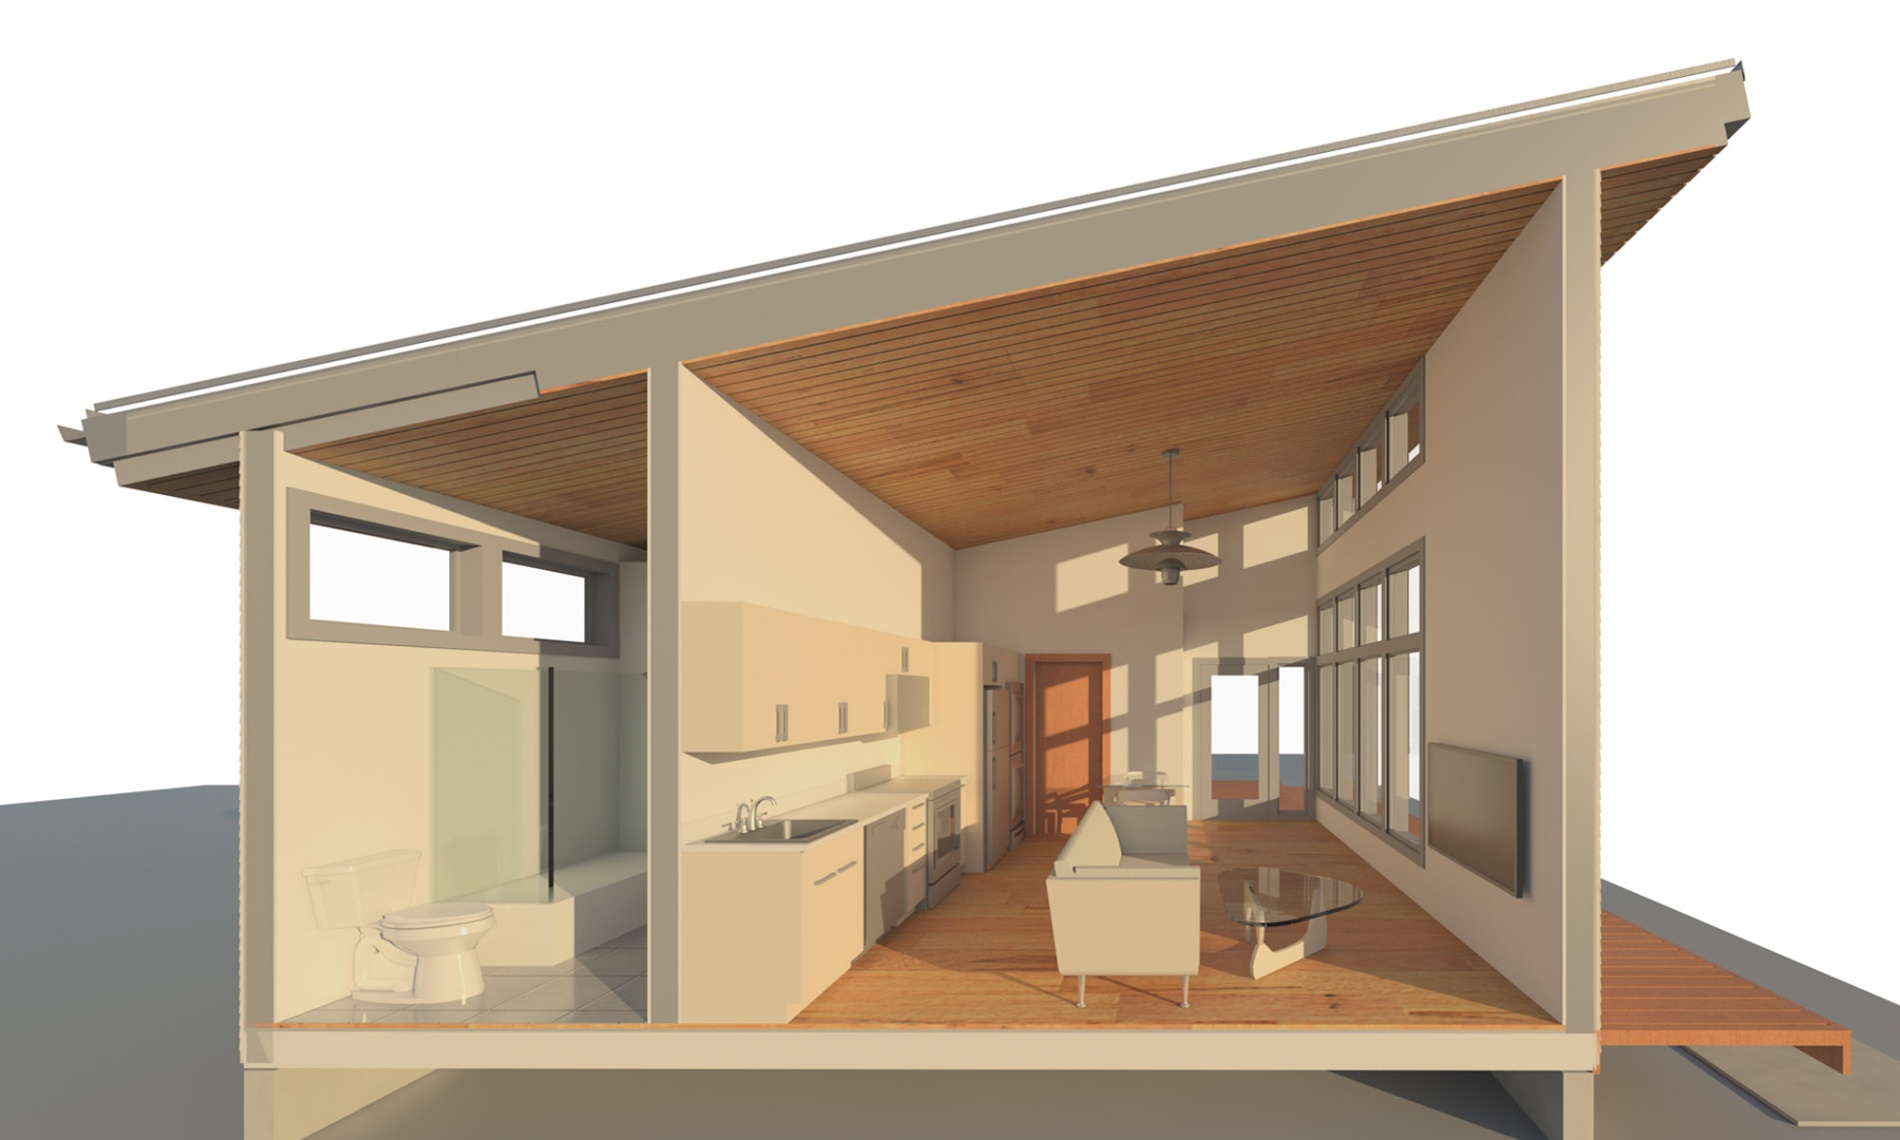 accessory dwelling unit ideas Bulan 3 A Design Guide to Portland ADUs (Accessory Dwelling Units) - PART